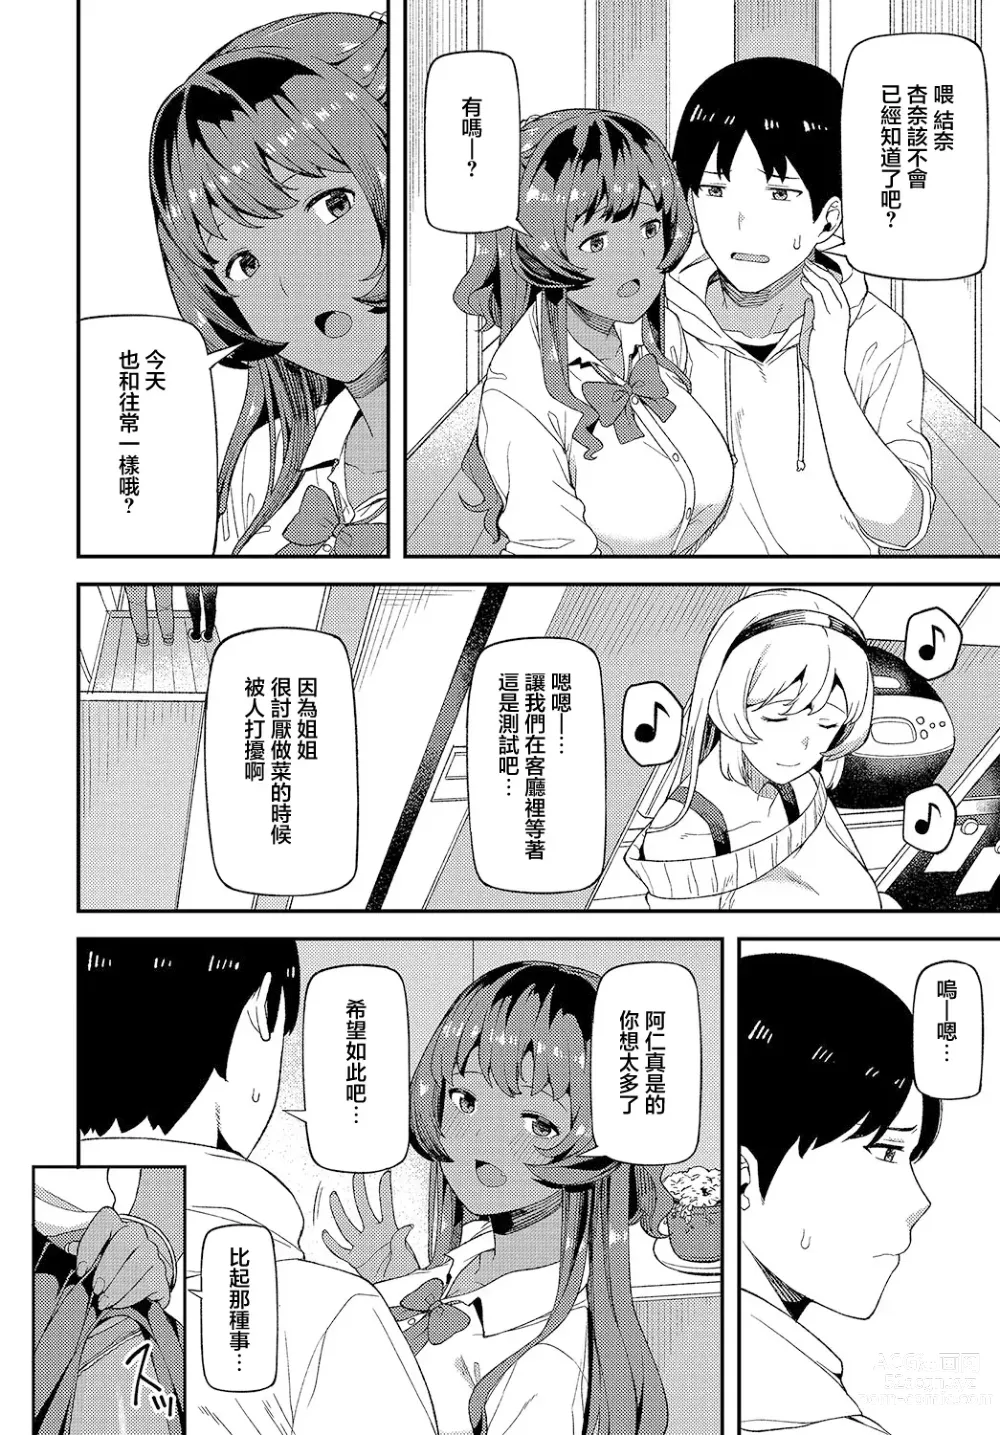 Page 3 of manga Shinkinkyori Renai